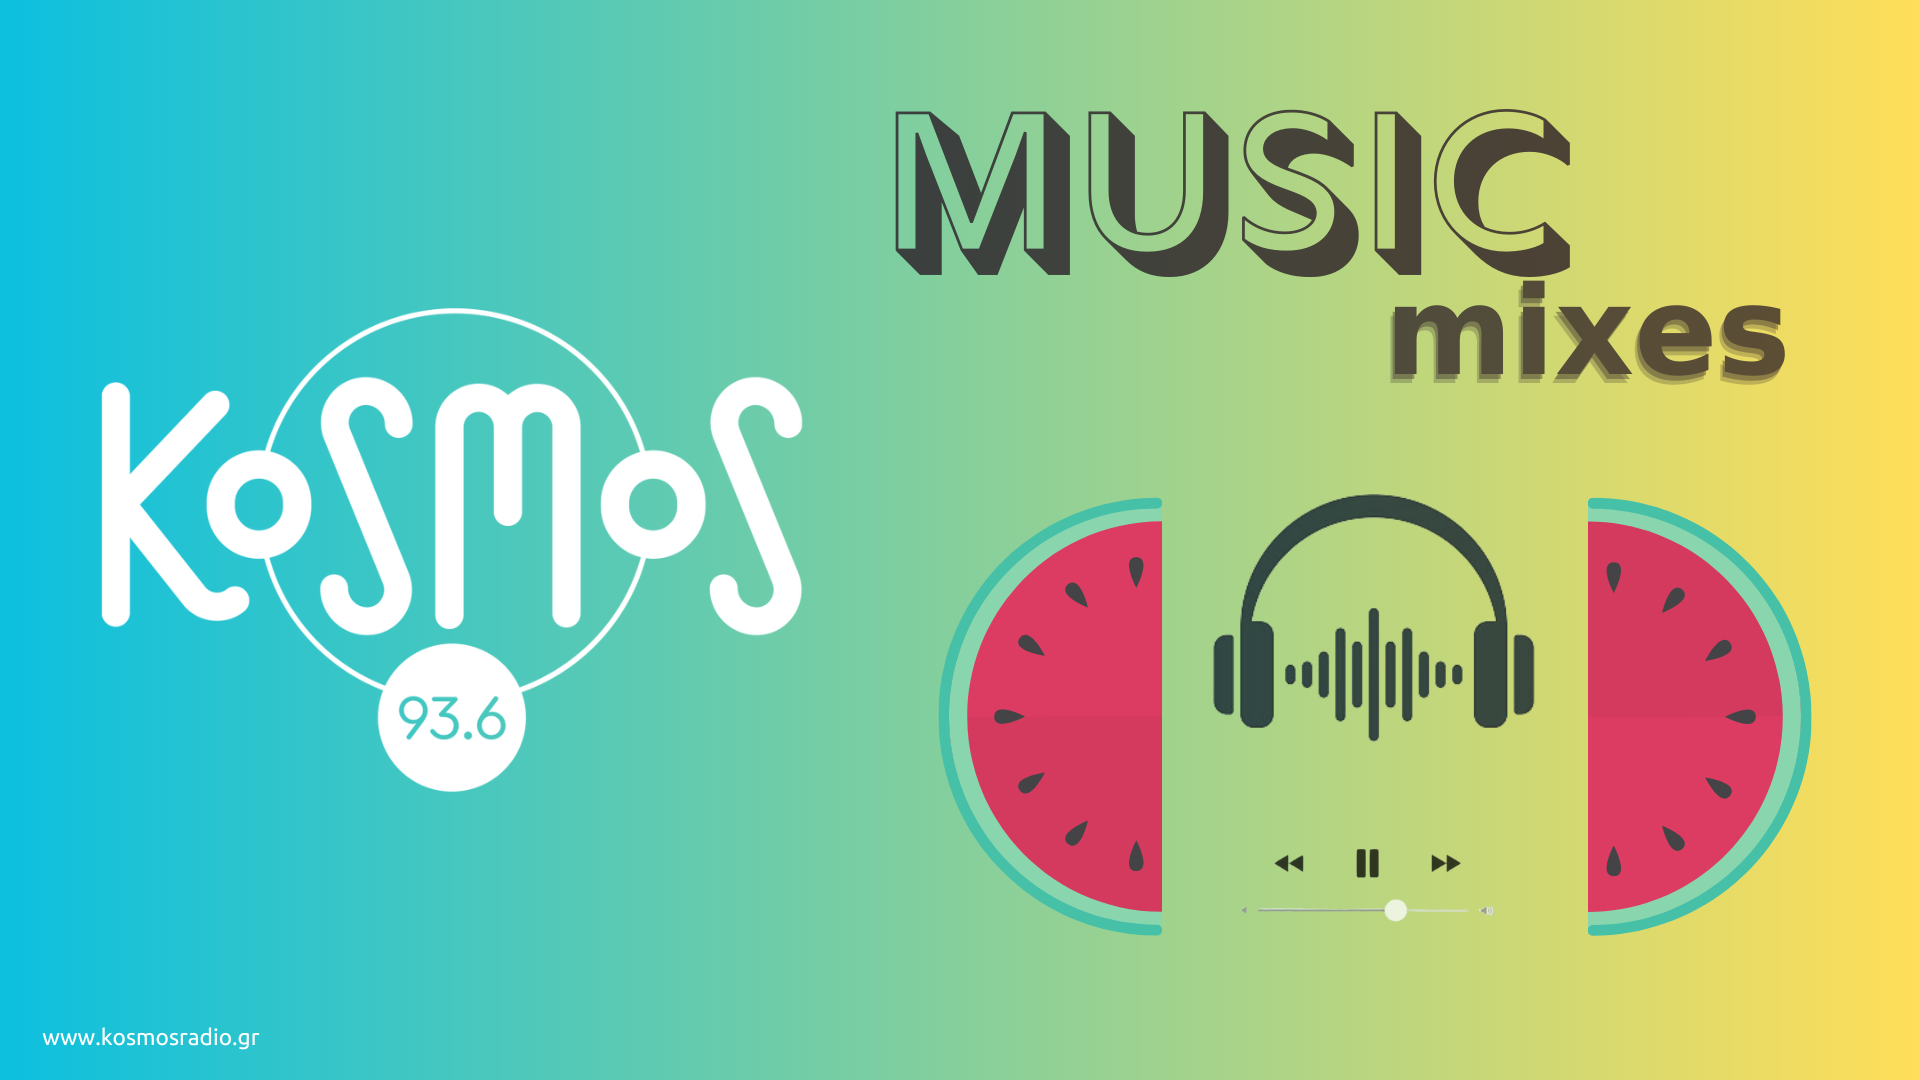 Τα Music Mixes του καλοκαιριού με την υπογραφή του Kosmos